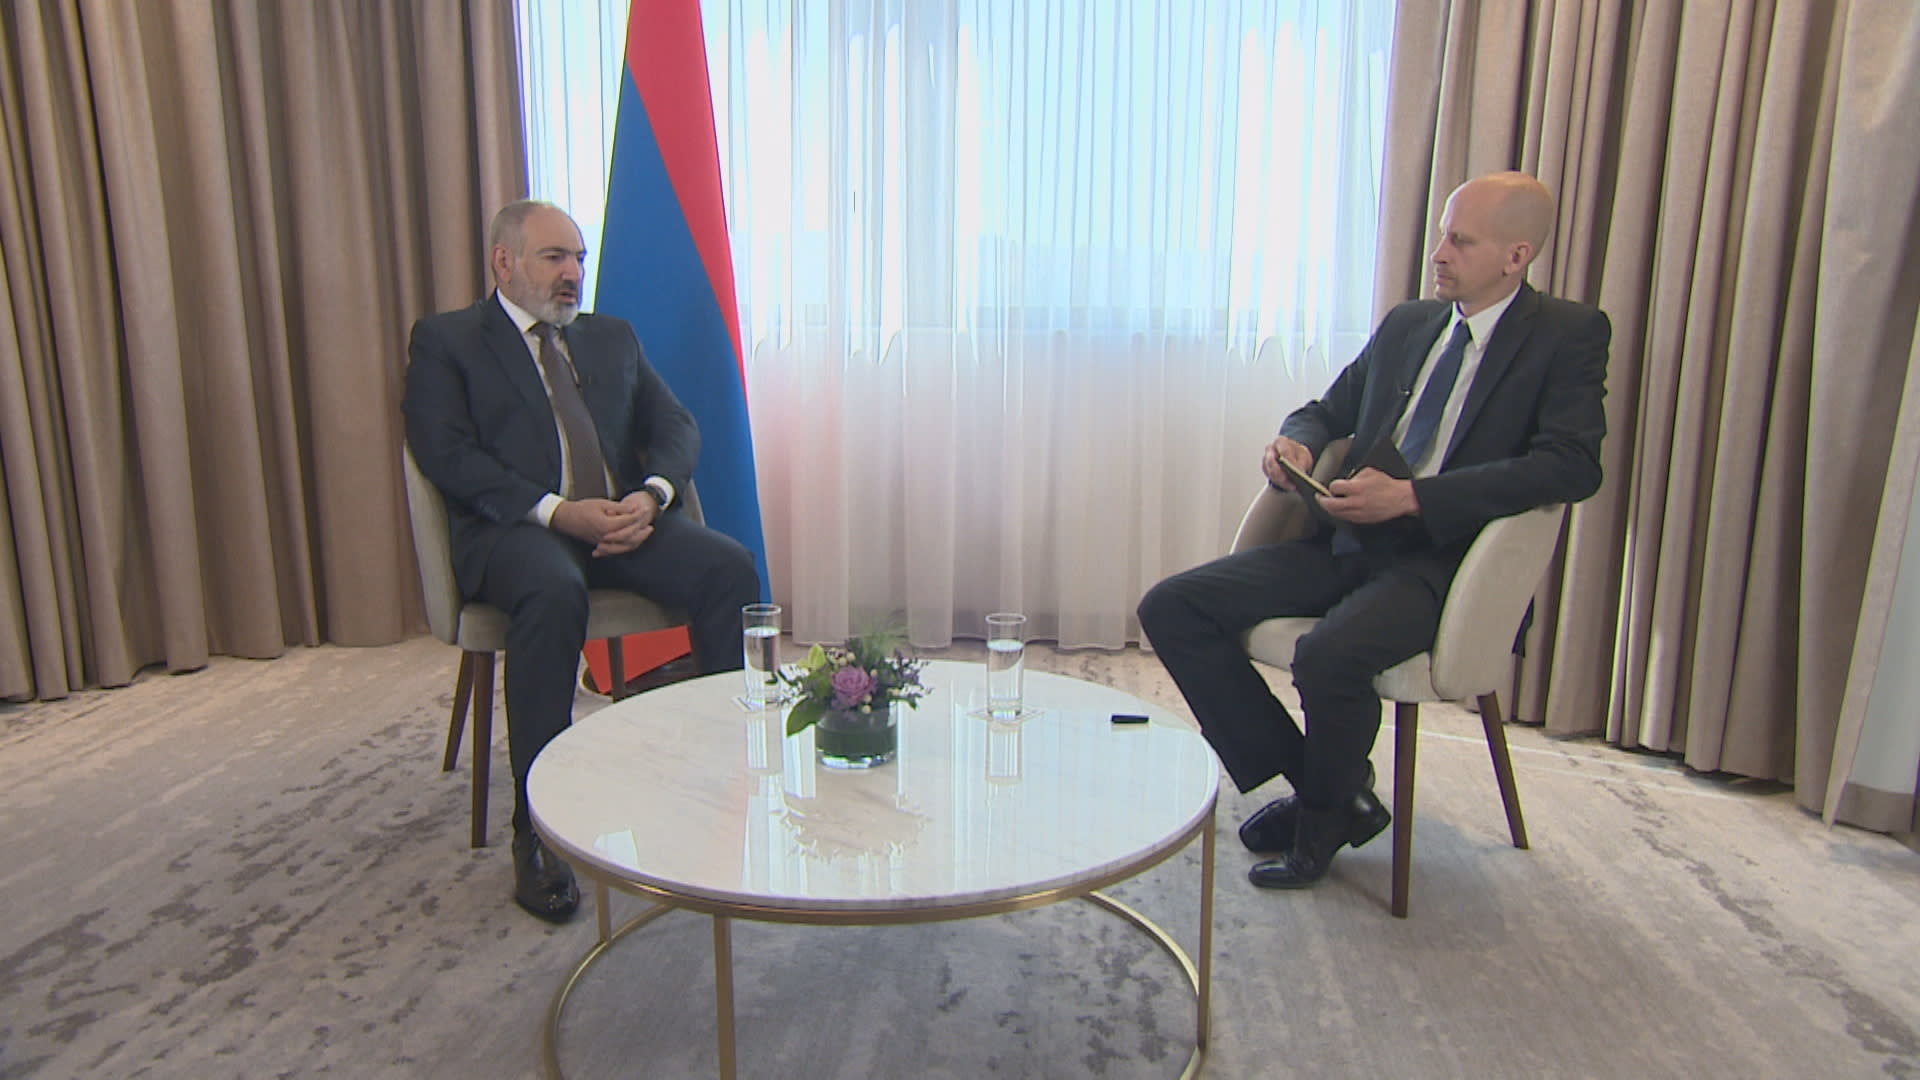 Arménský premiér Nikol Pašinjan v rozhovoru pro CNN Prima NEWS s vedoucím zahraniční redakce Matyášem Zrnem.